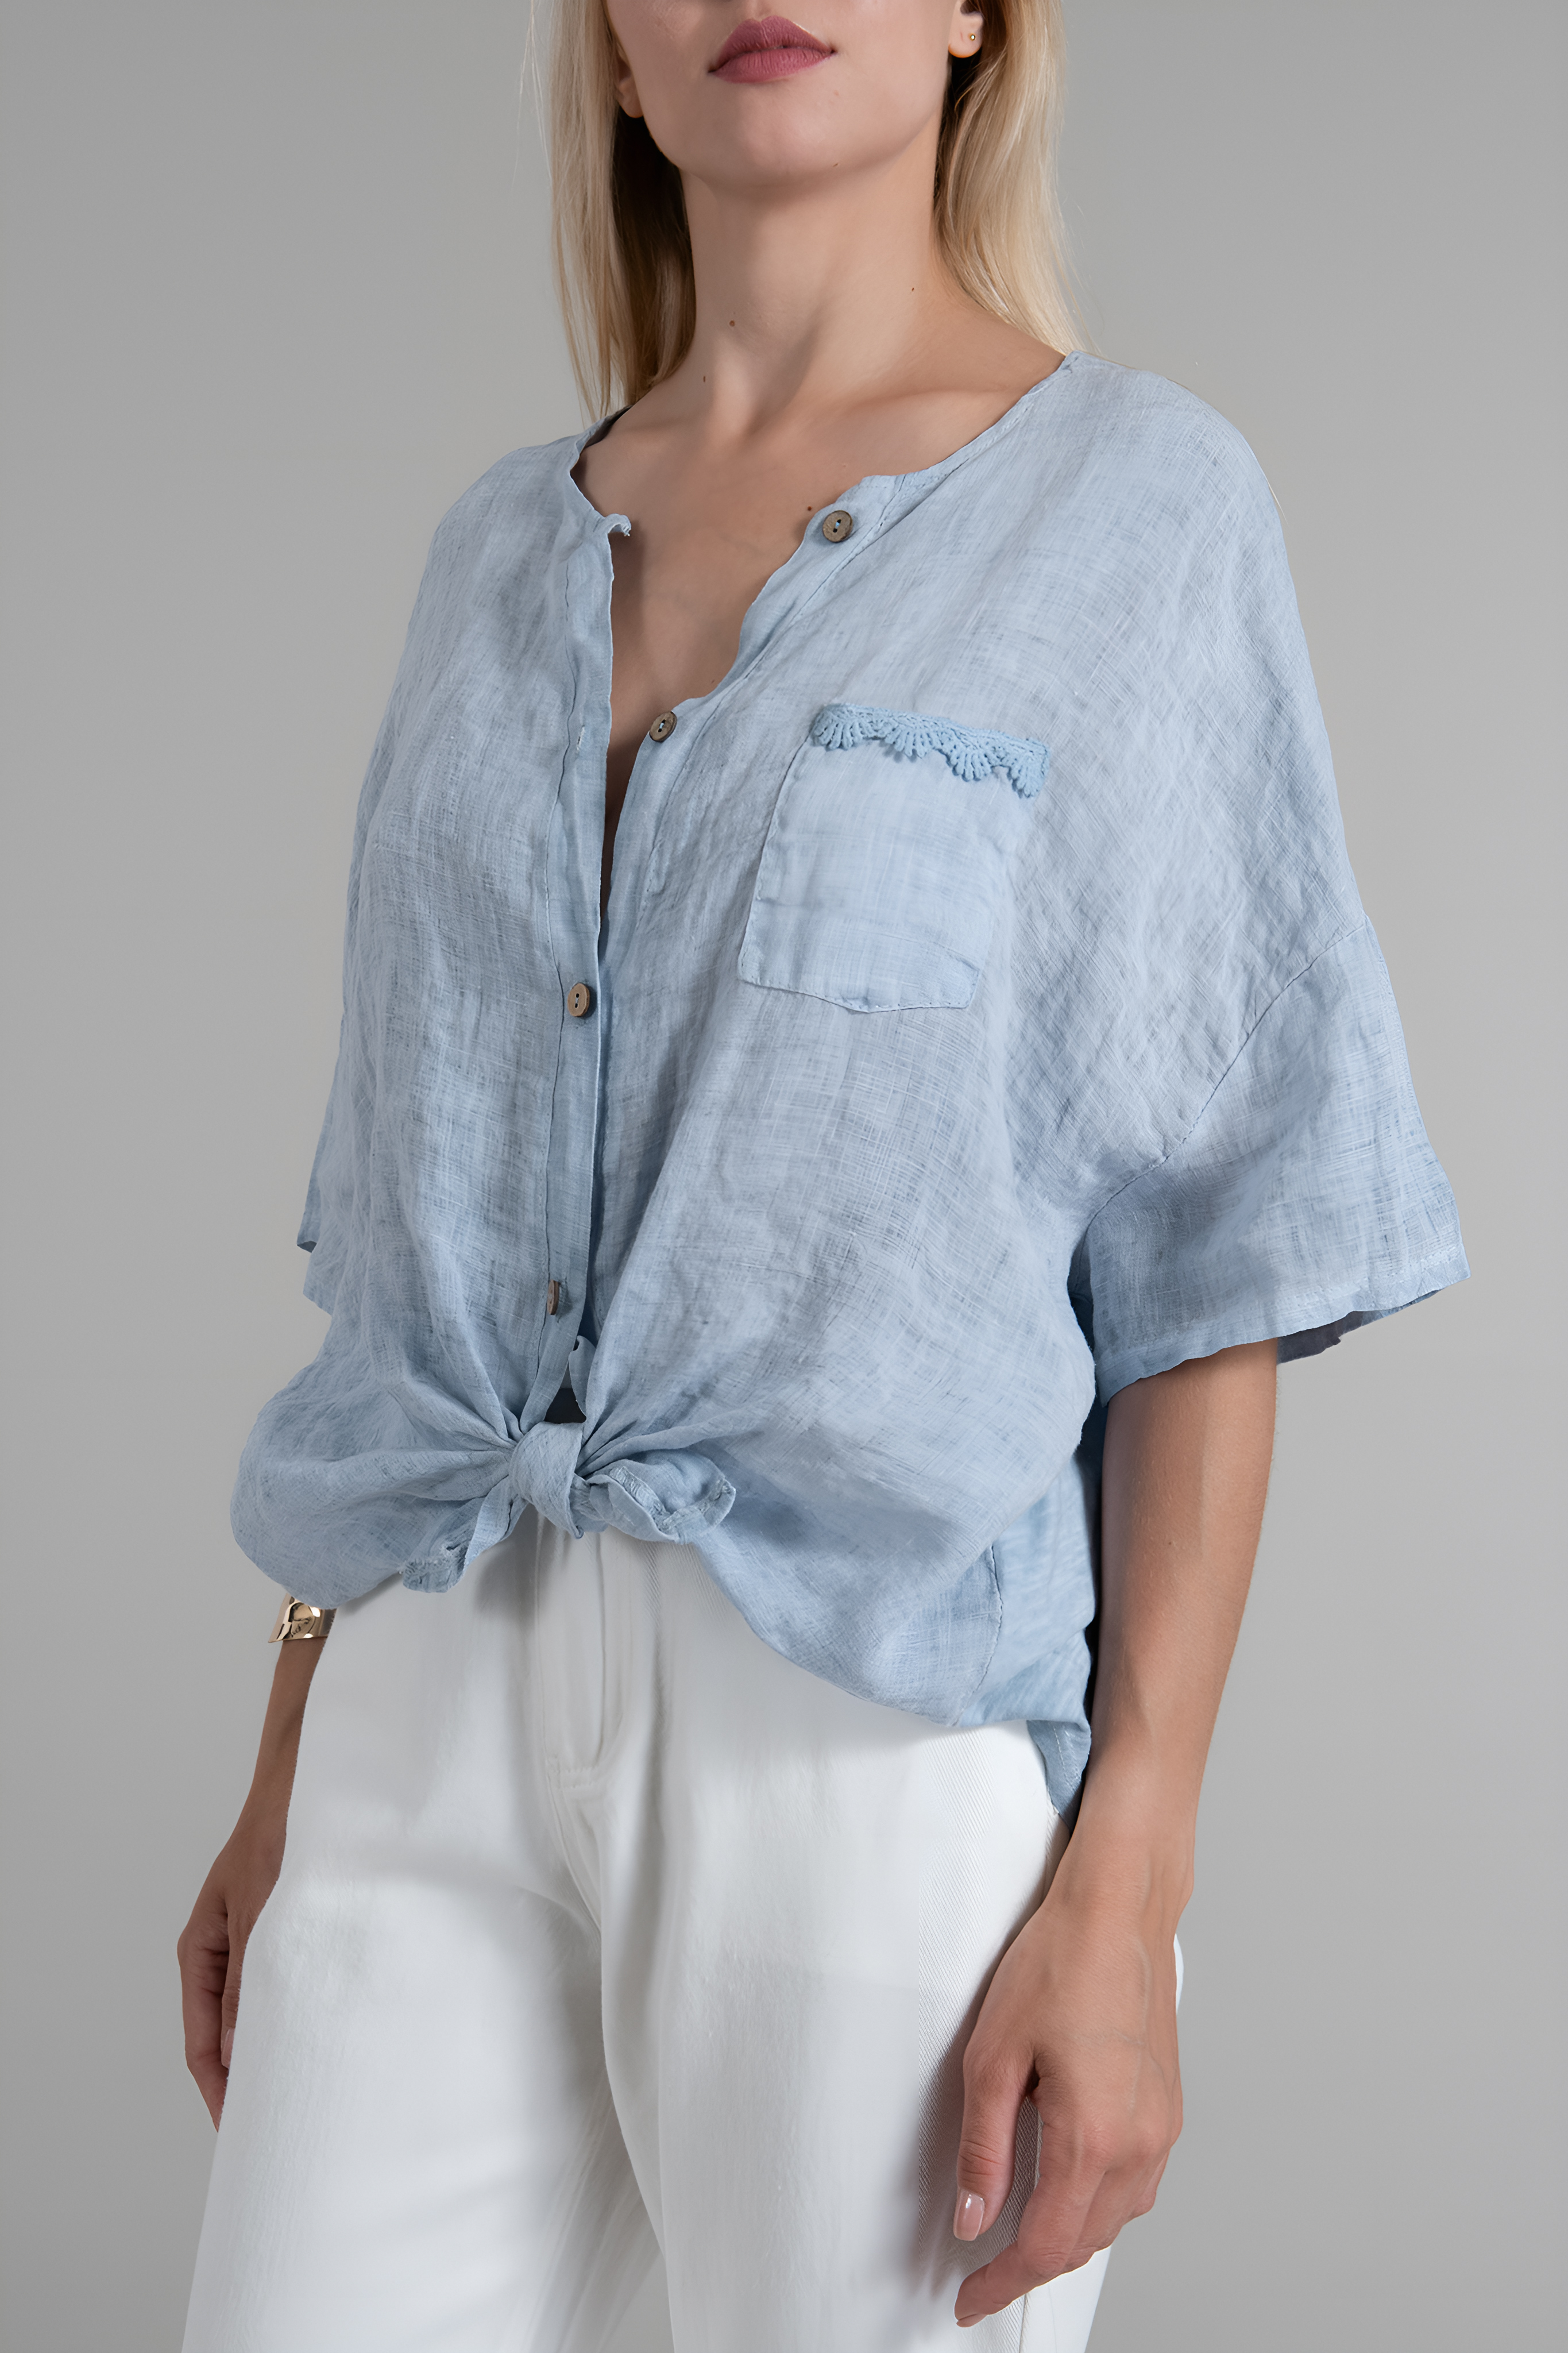 Дамска риза от лен и памук в синьо, вързана отпред